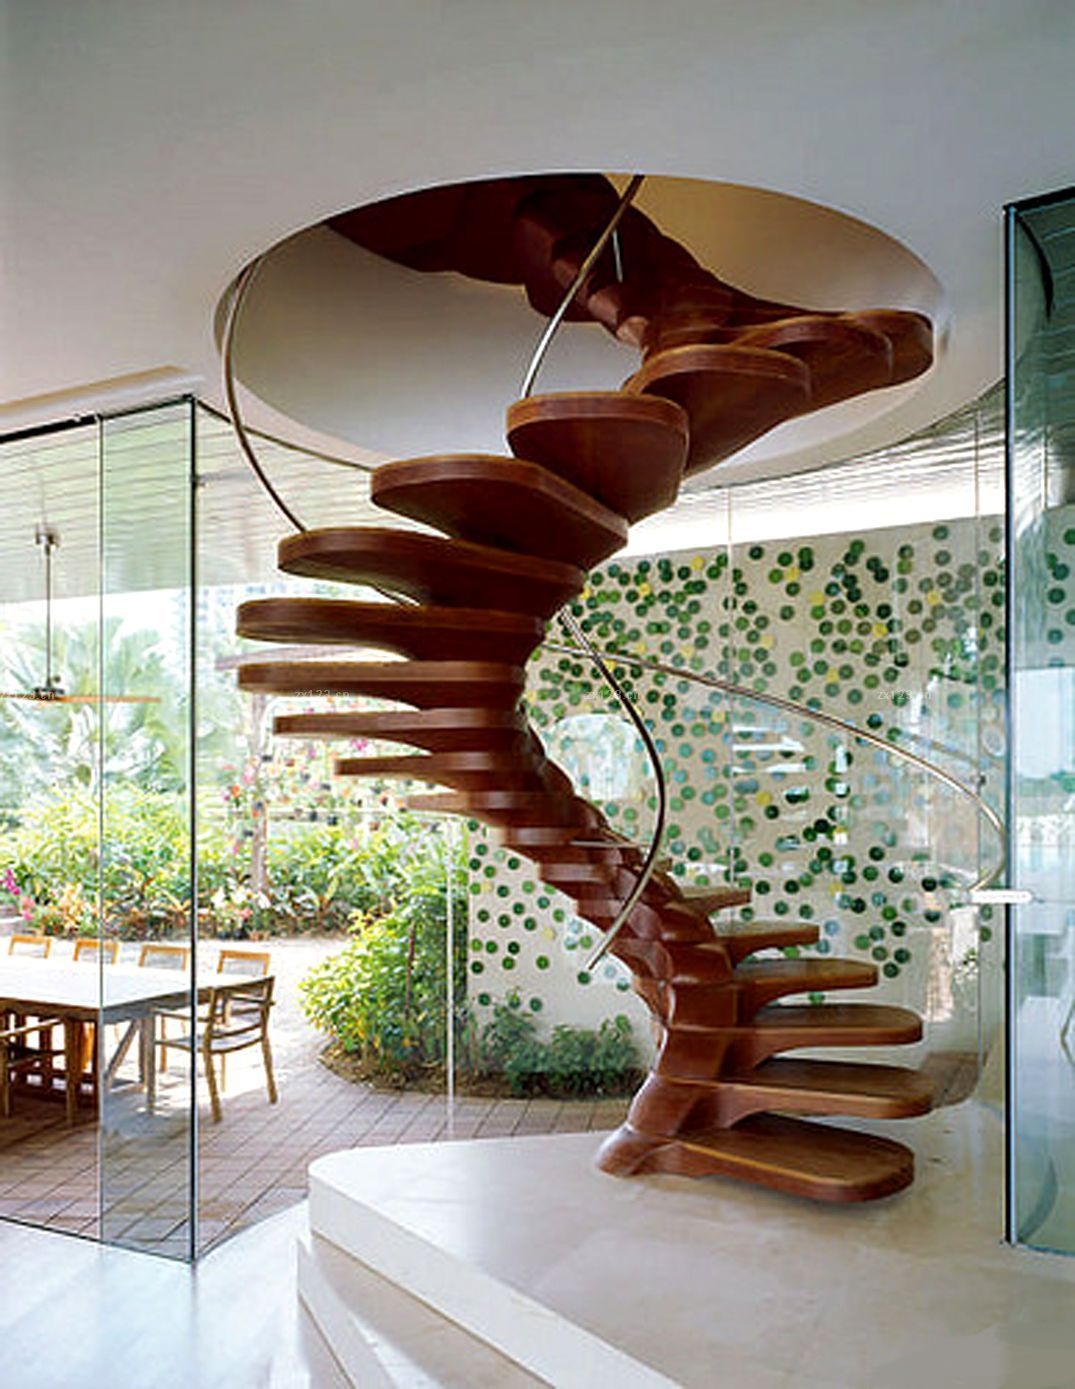 Суперсовременный и изящный вид винтовой лестницы выполненной из дерева